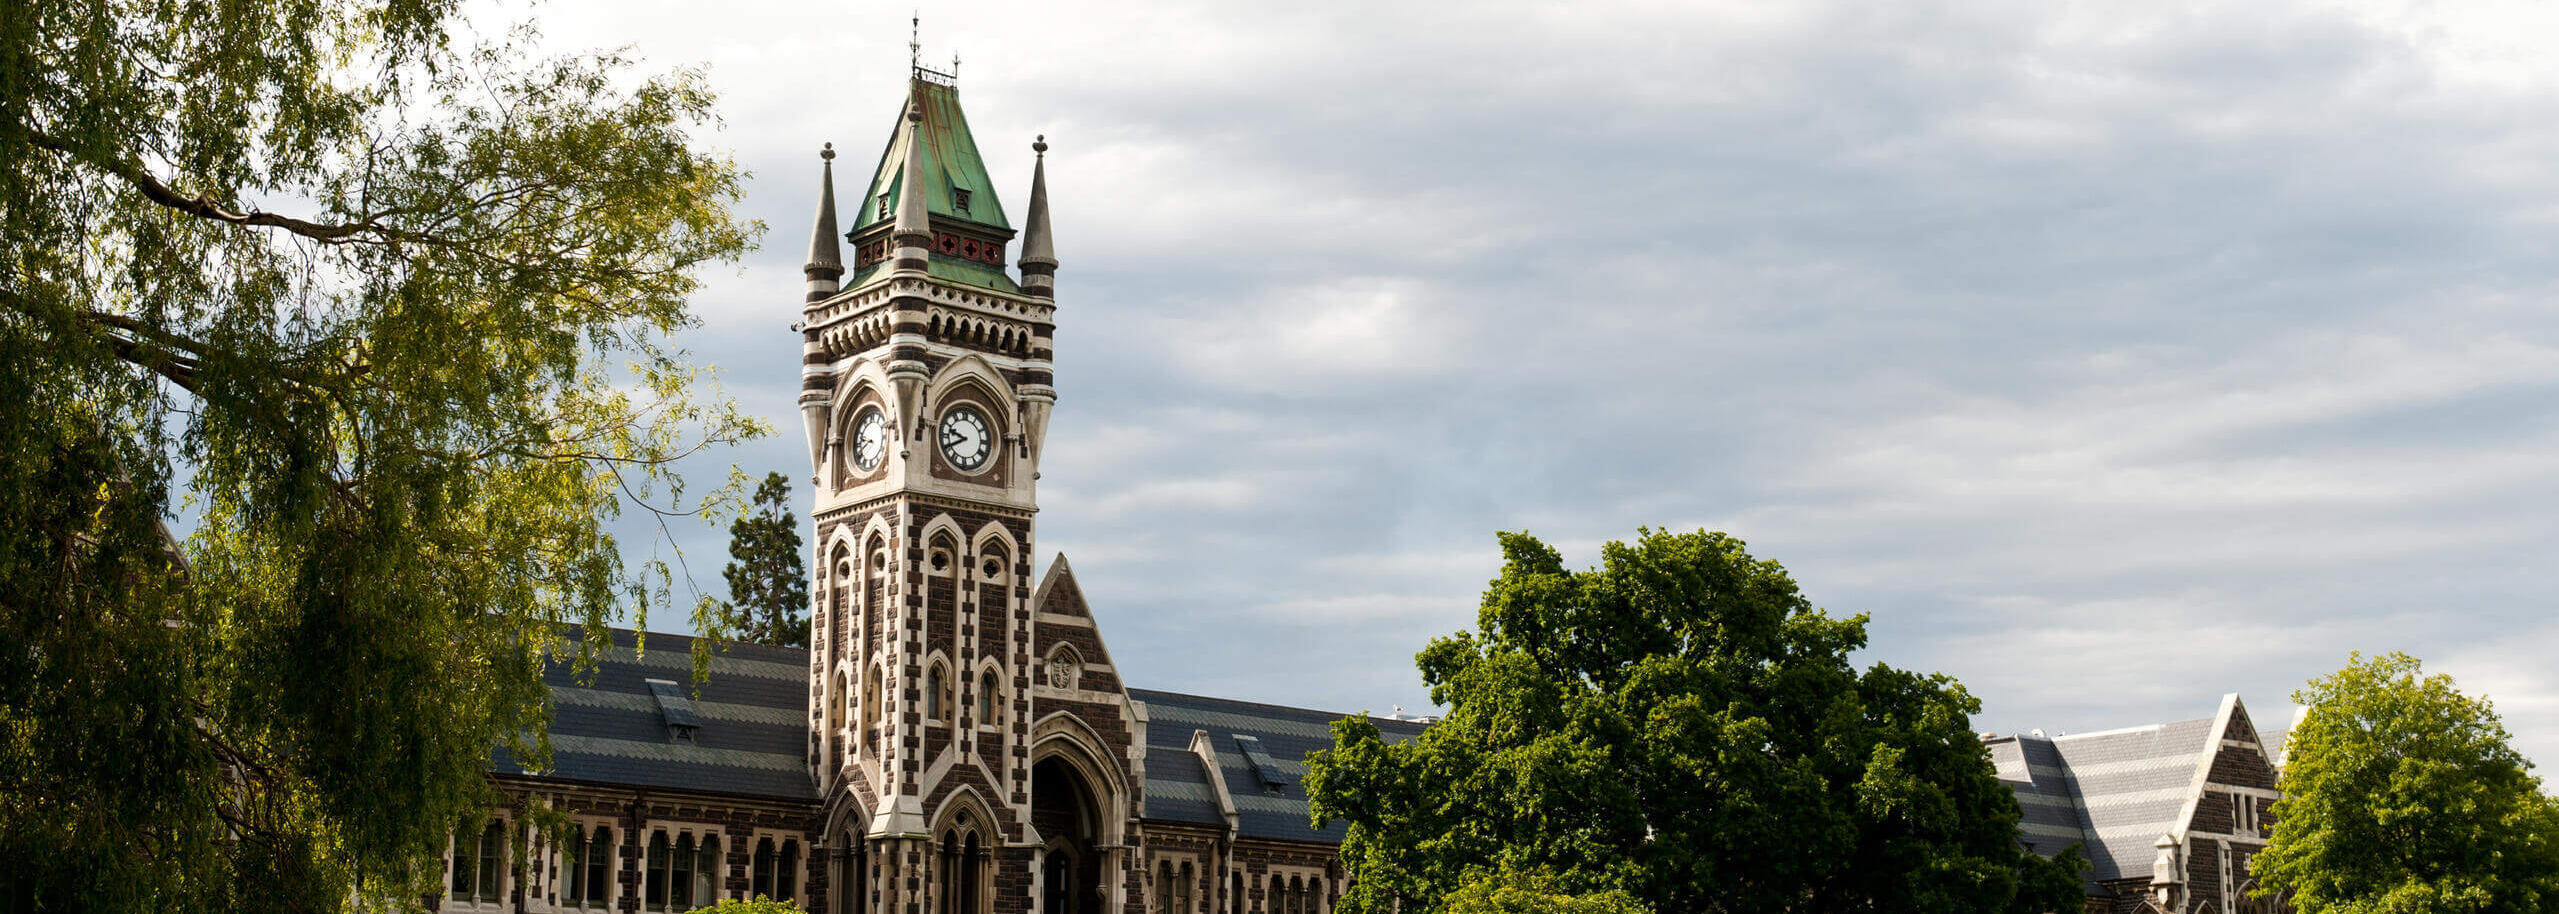 Clocktower der University of Otago in Neuseeland